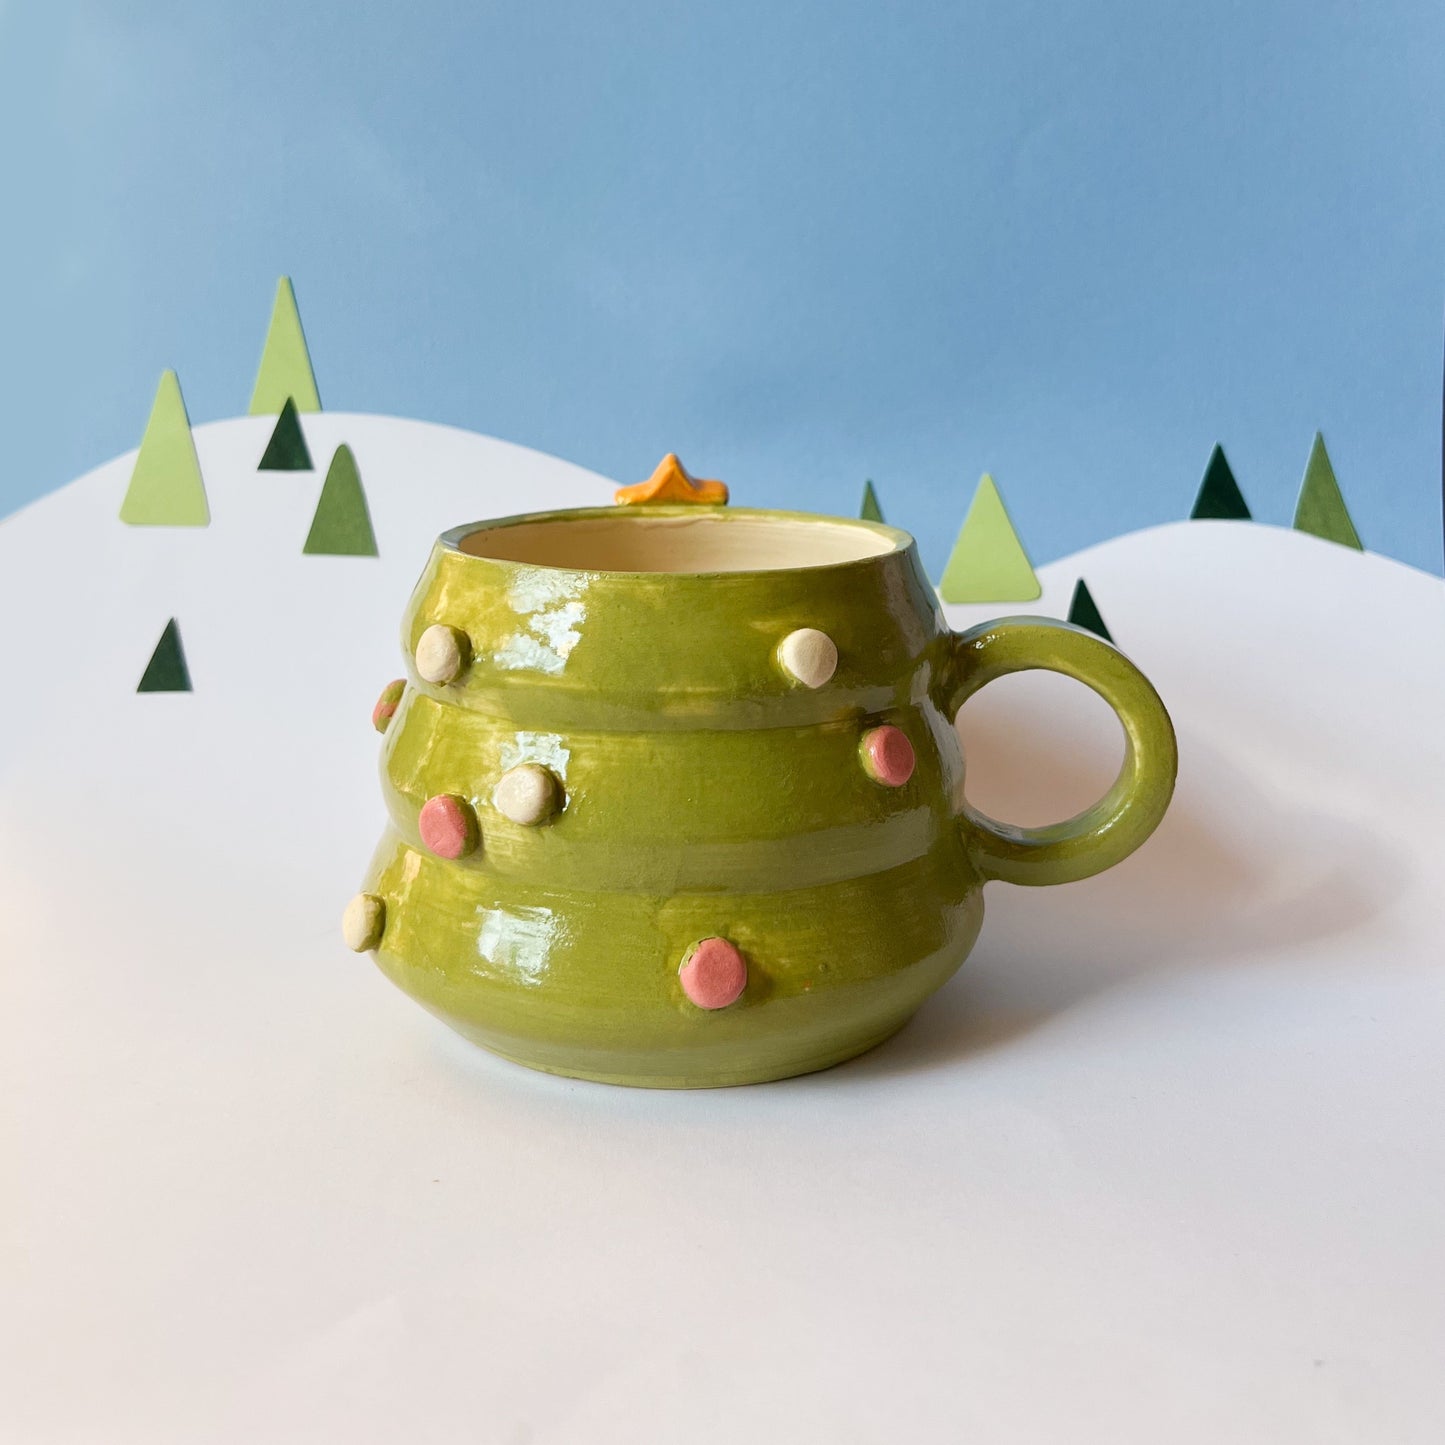 Christmas tree mug